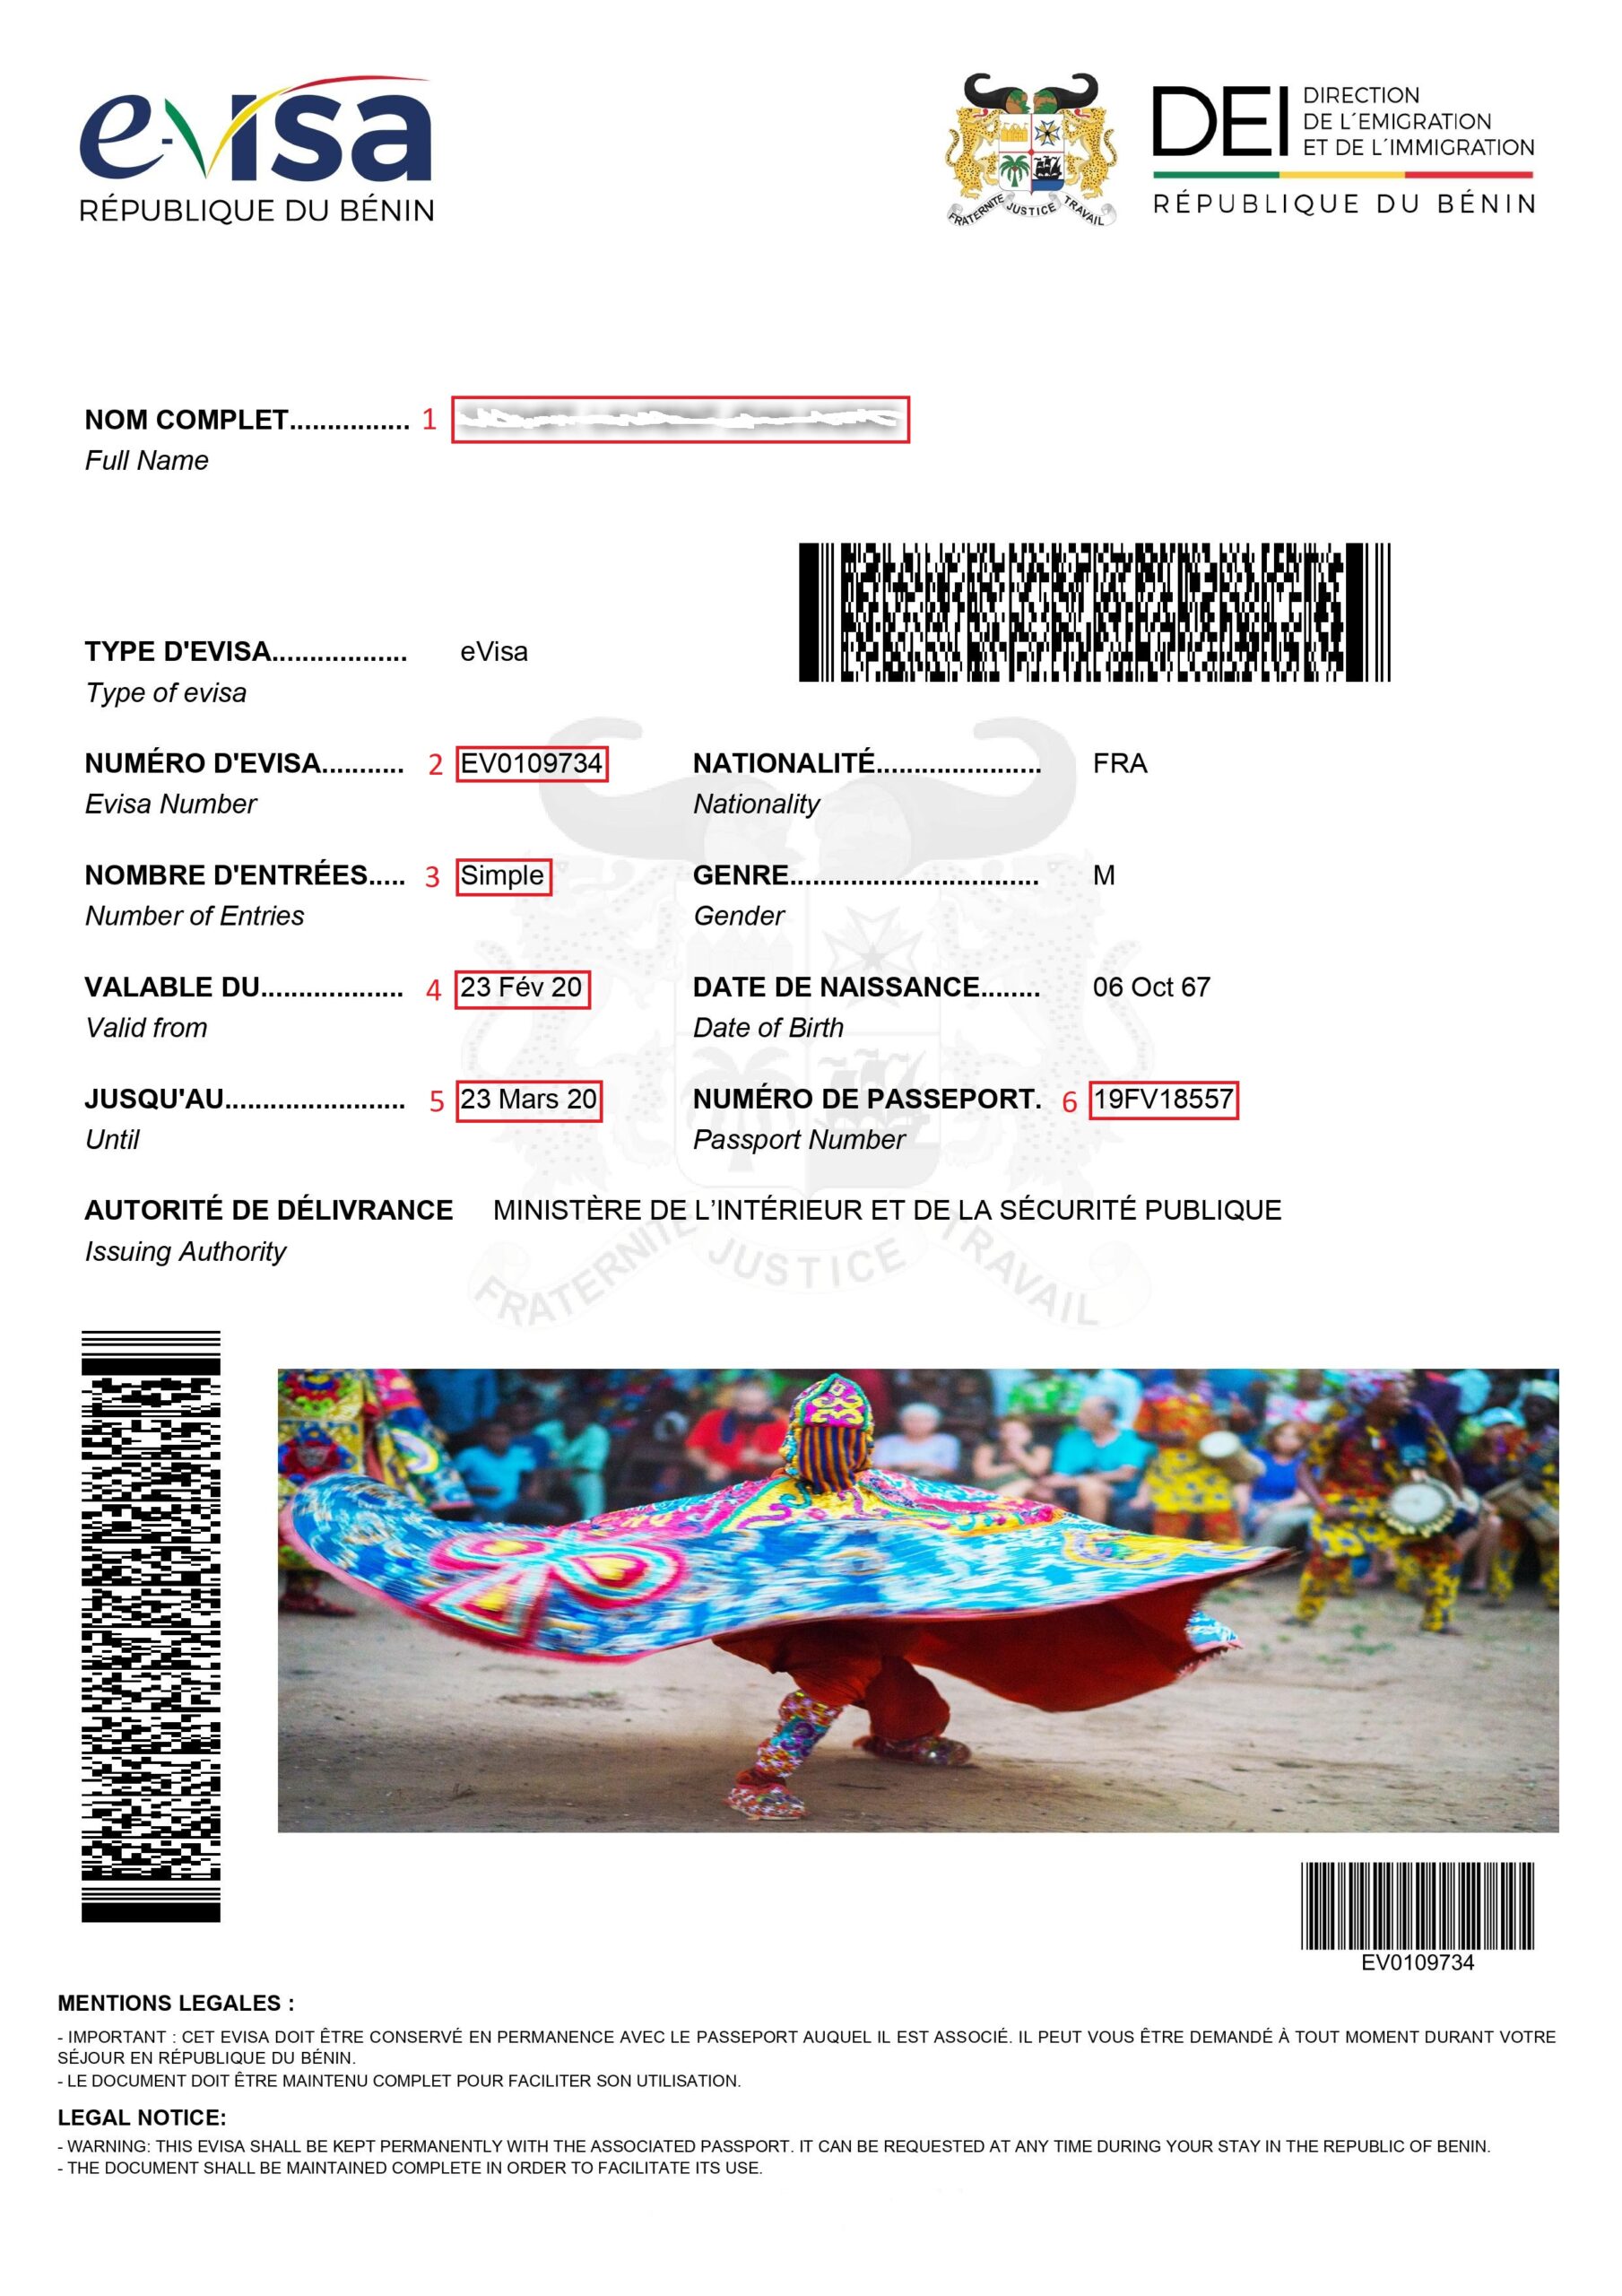 Exemple visa pour eVisa Bénin